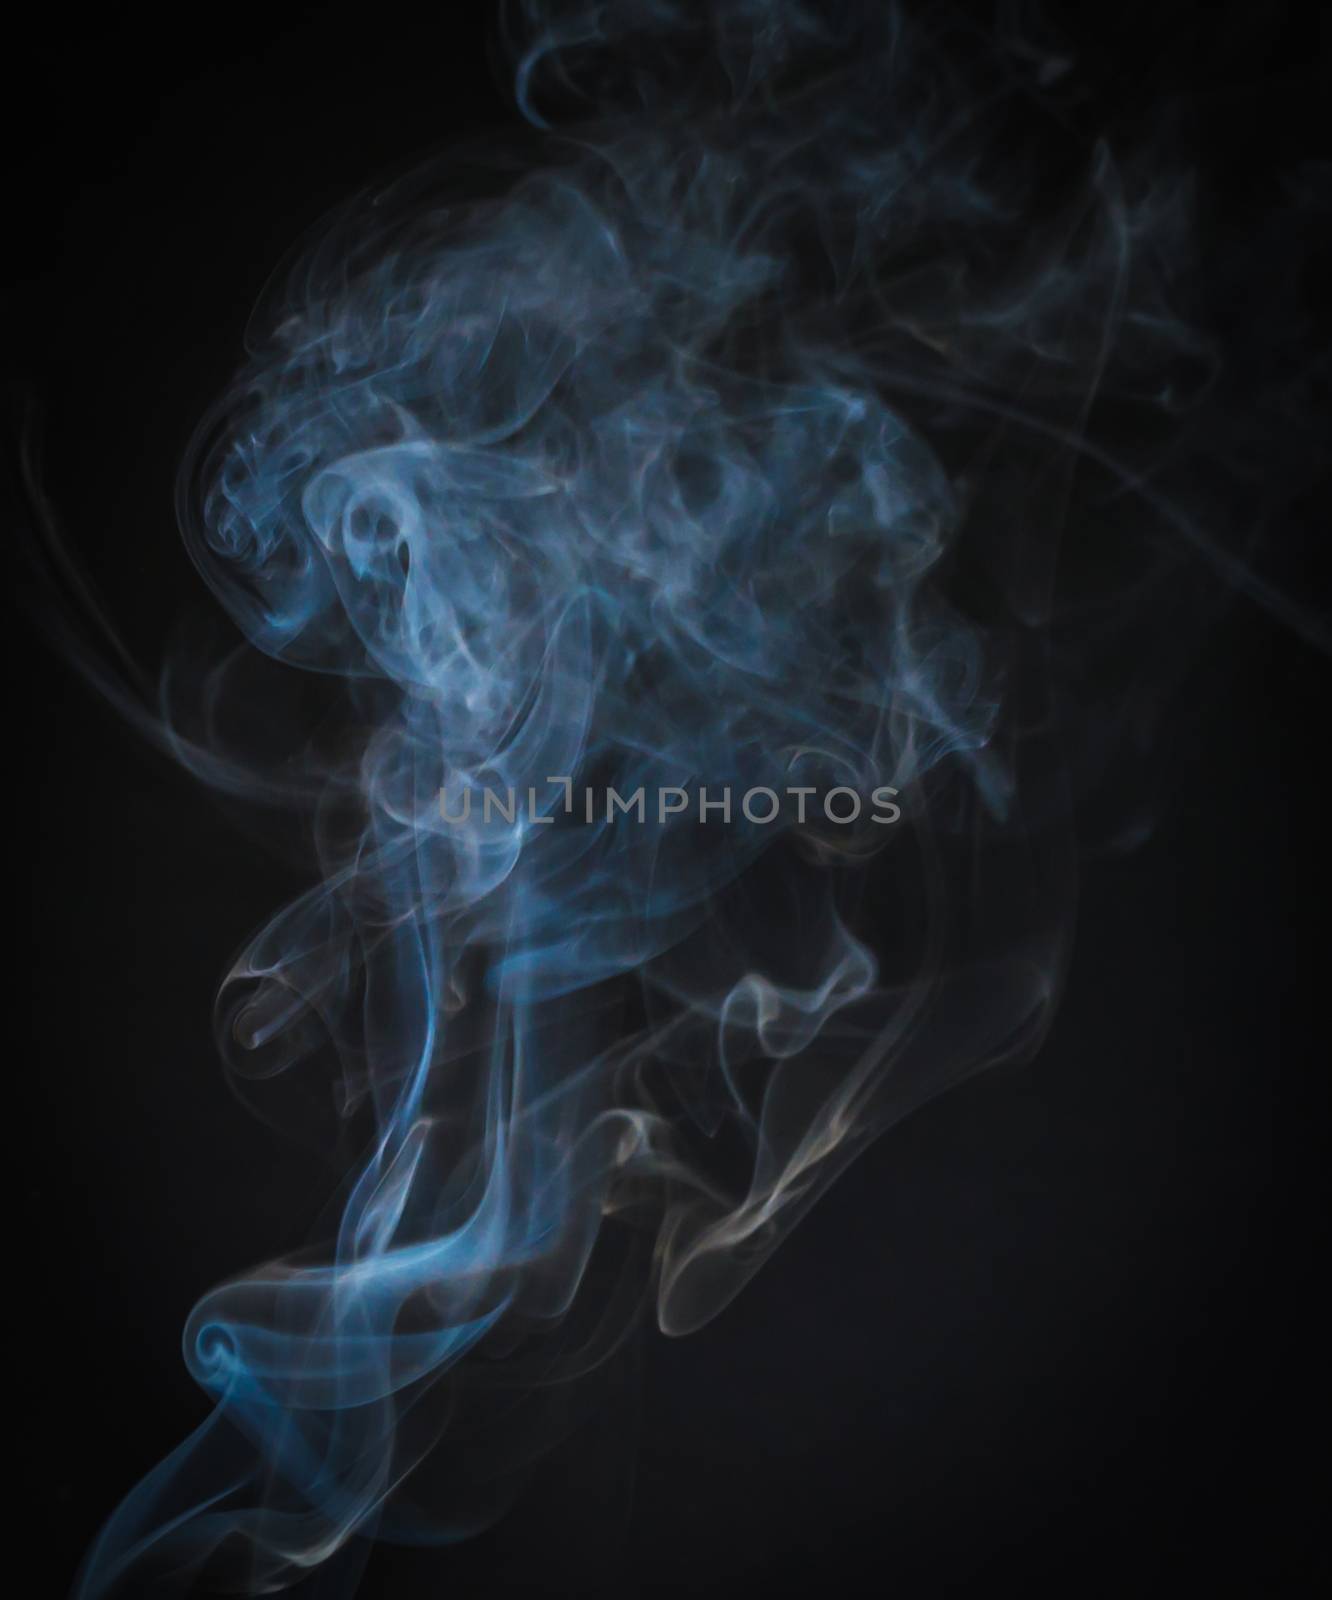 Beautiful of smoke movement as art